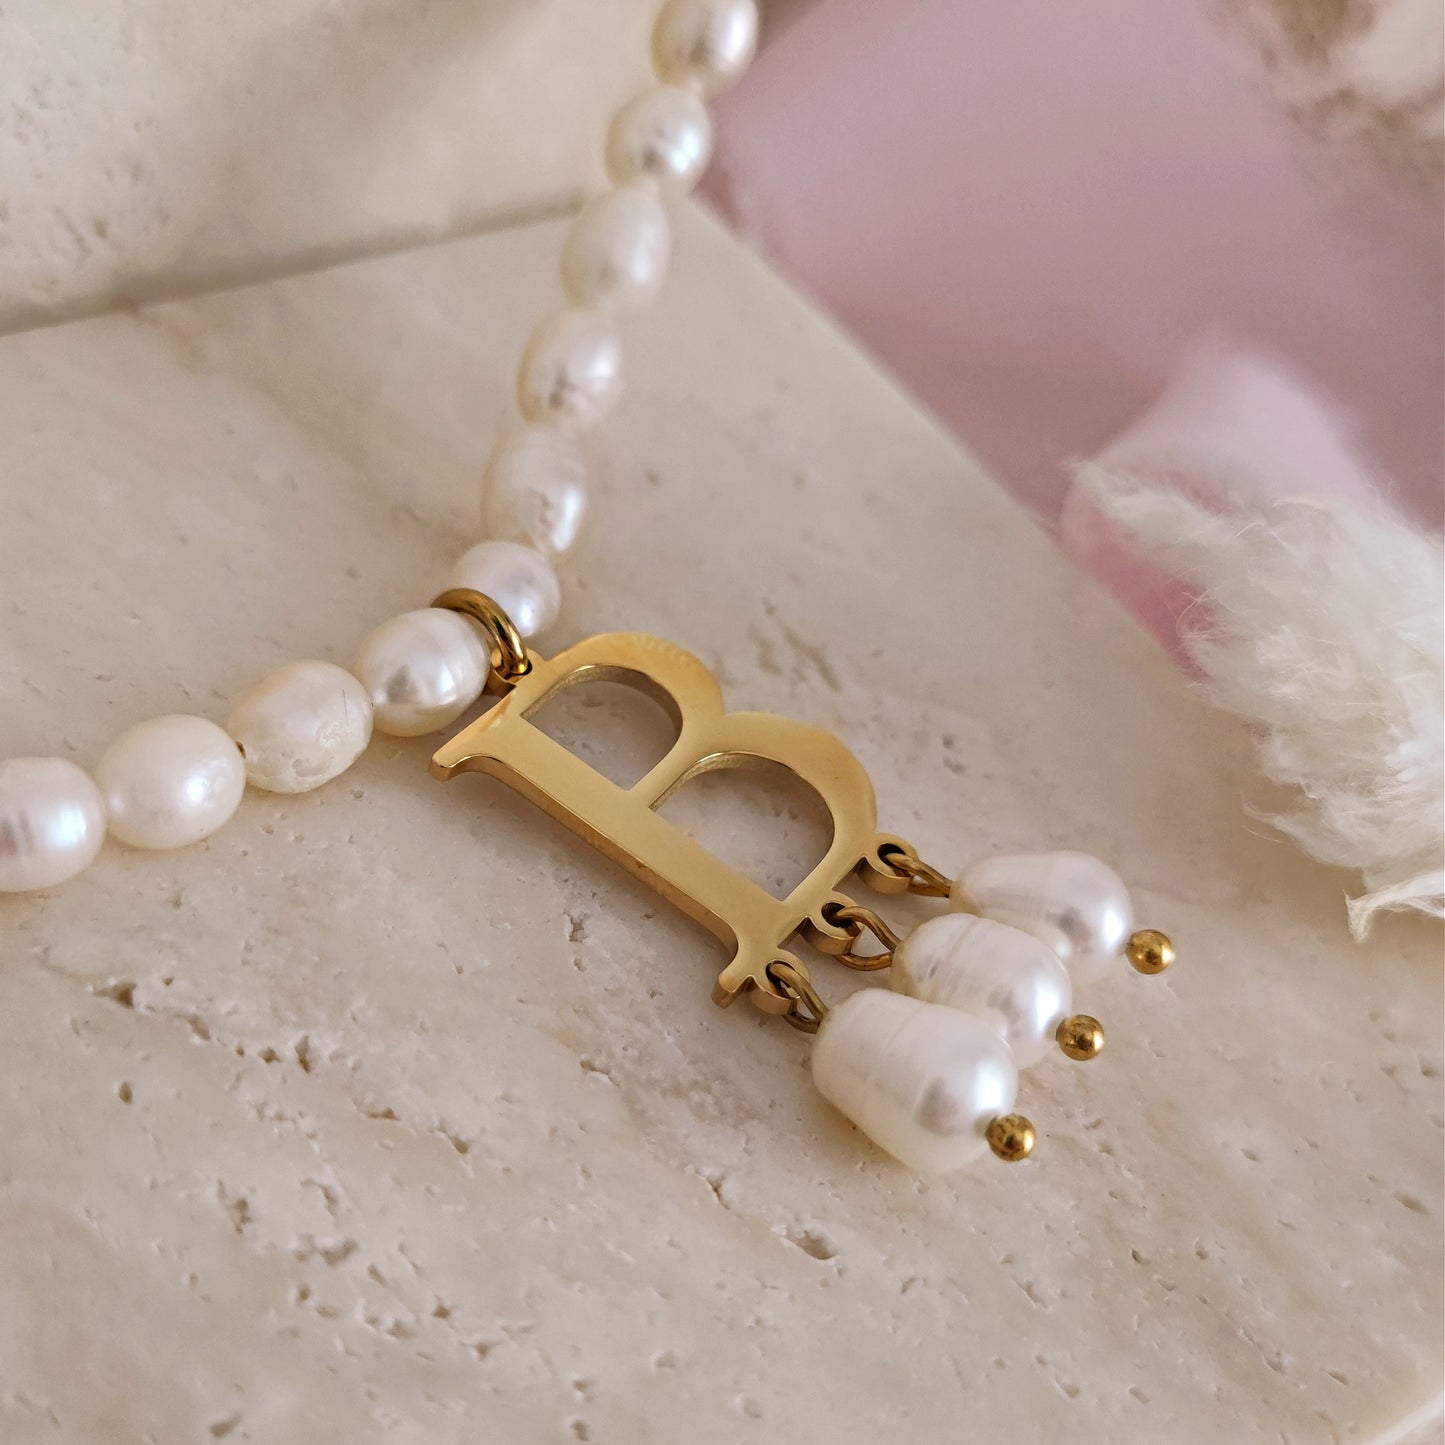 Anne Boleyn "B" initial necklace with freshwater pearls